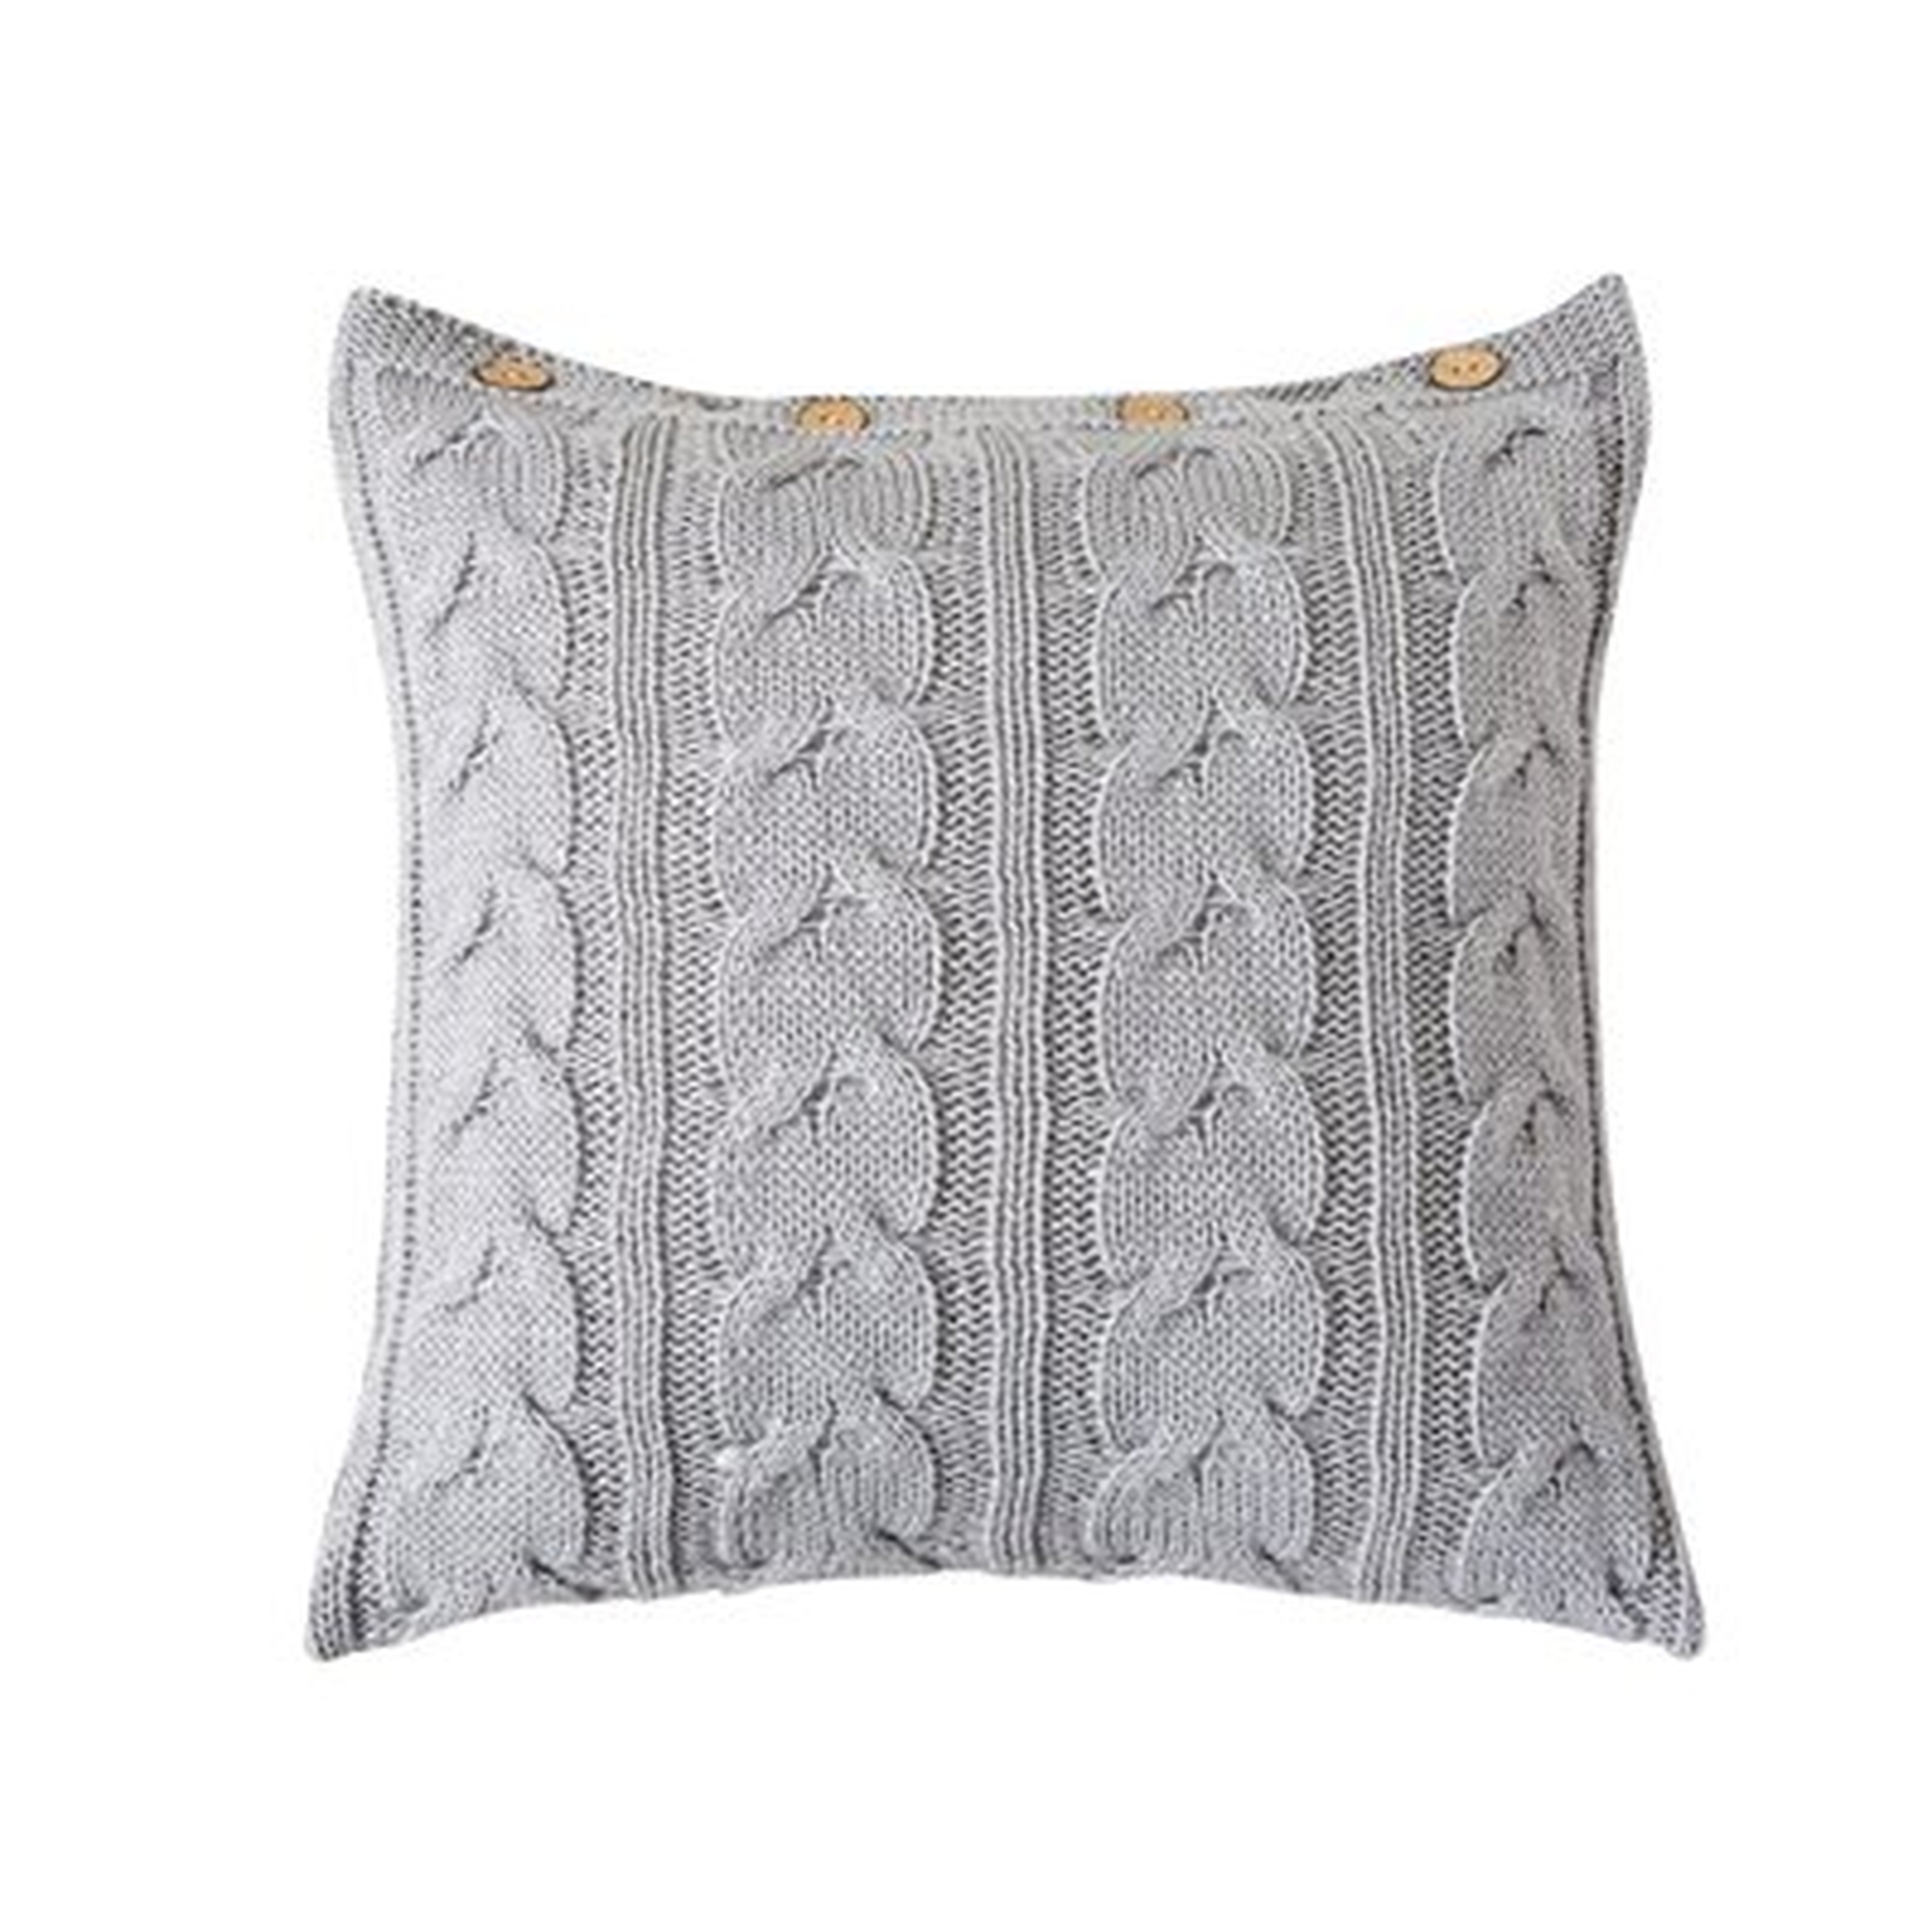 Grey Cable Knit Pillow, 20"X20" - Wayfair